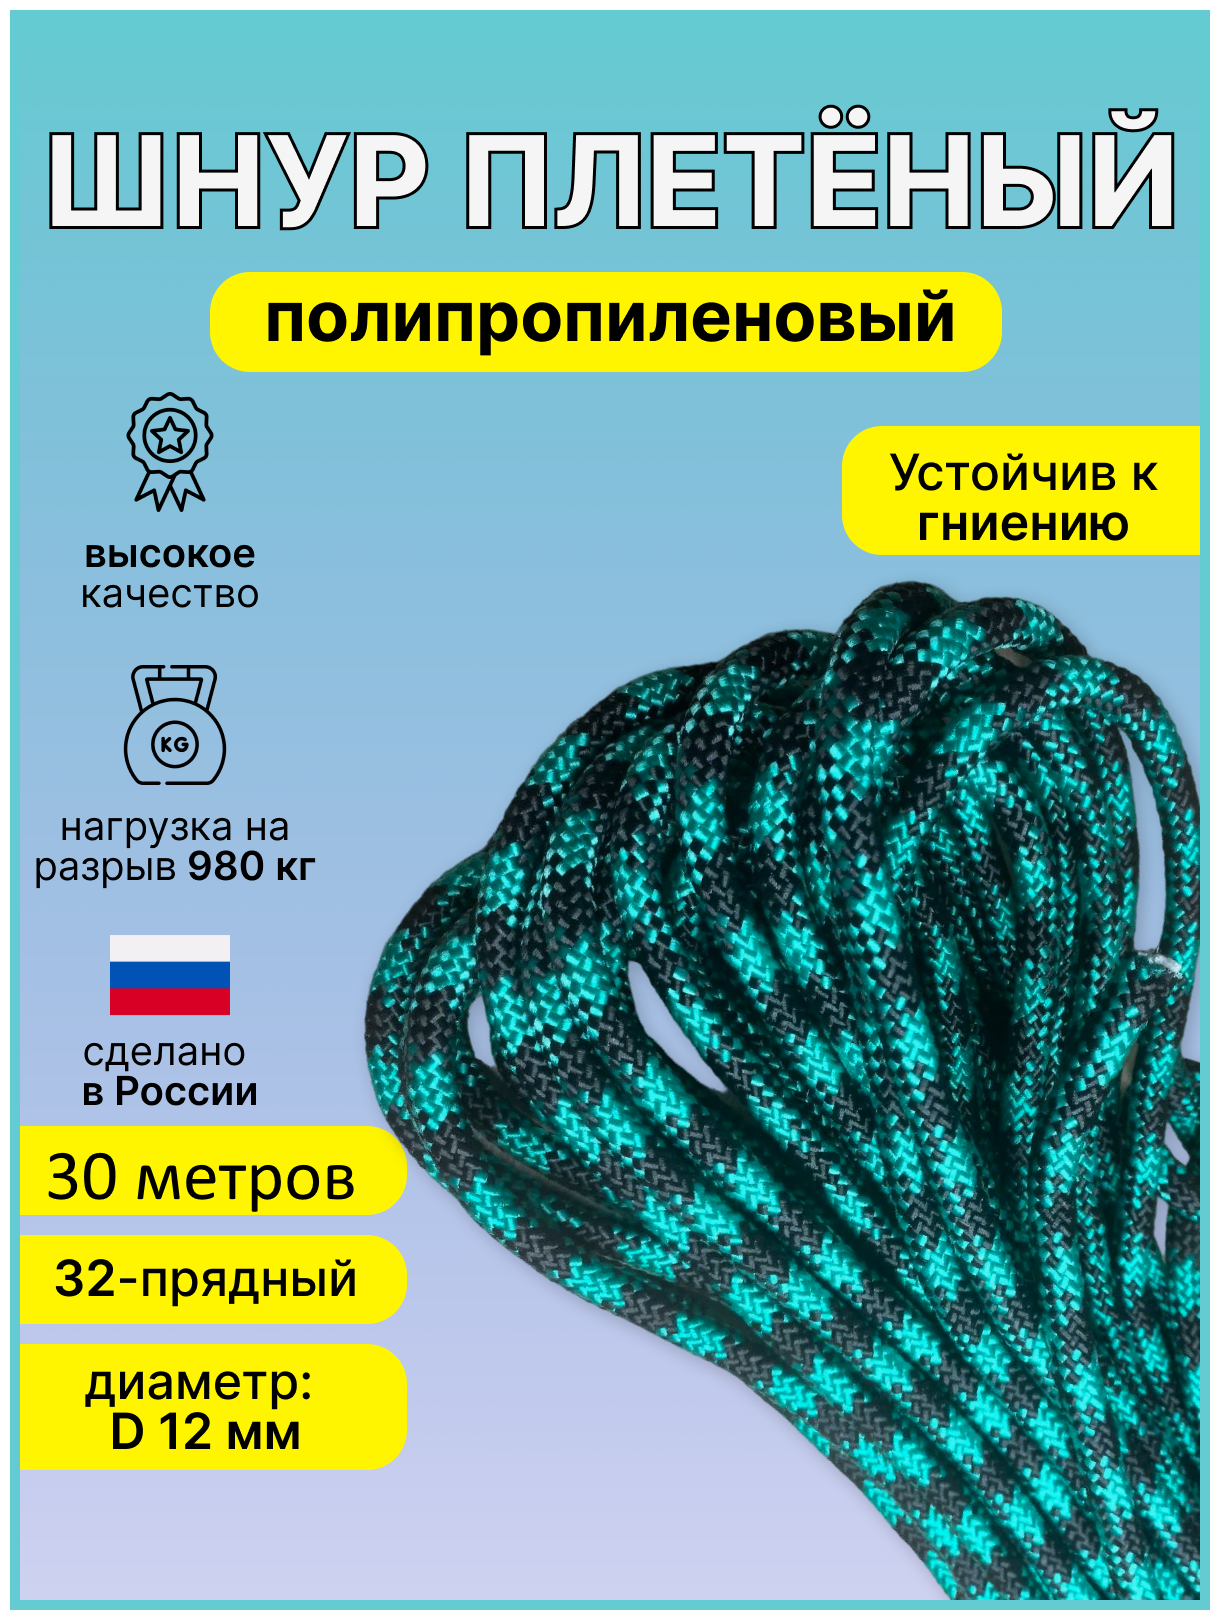 Верёвка шнур плетеный полипропиленовый 32-прядн. диаметр D-12мм - 30 метров.